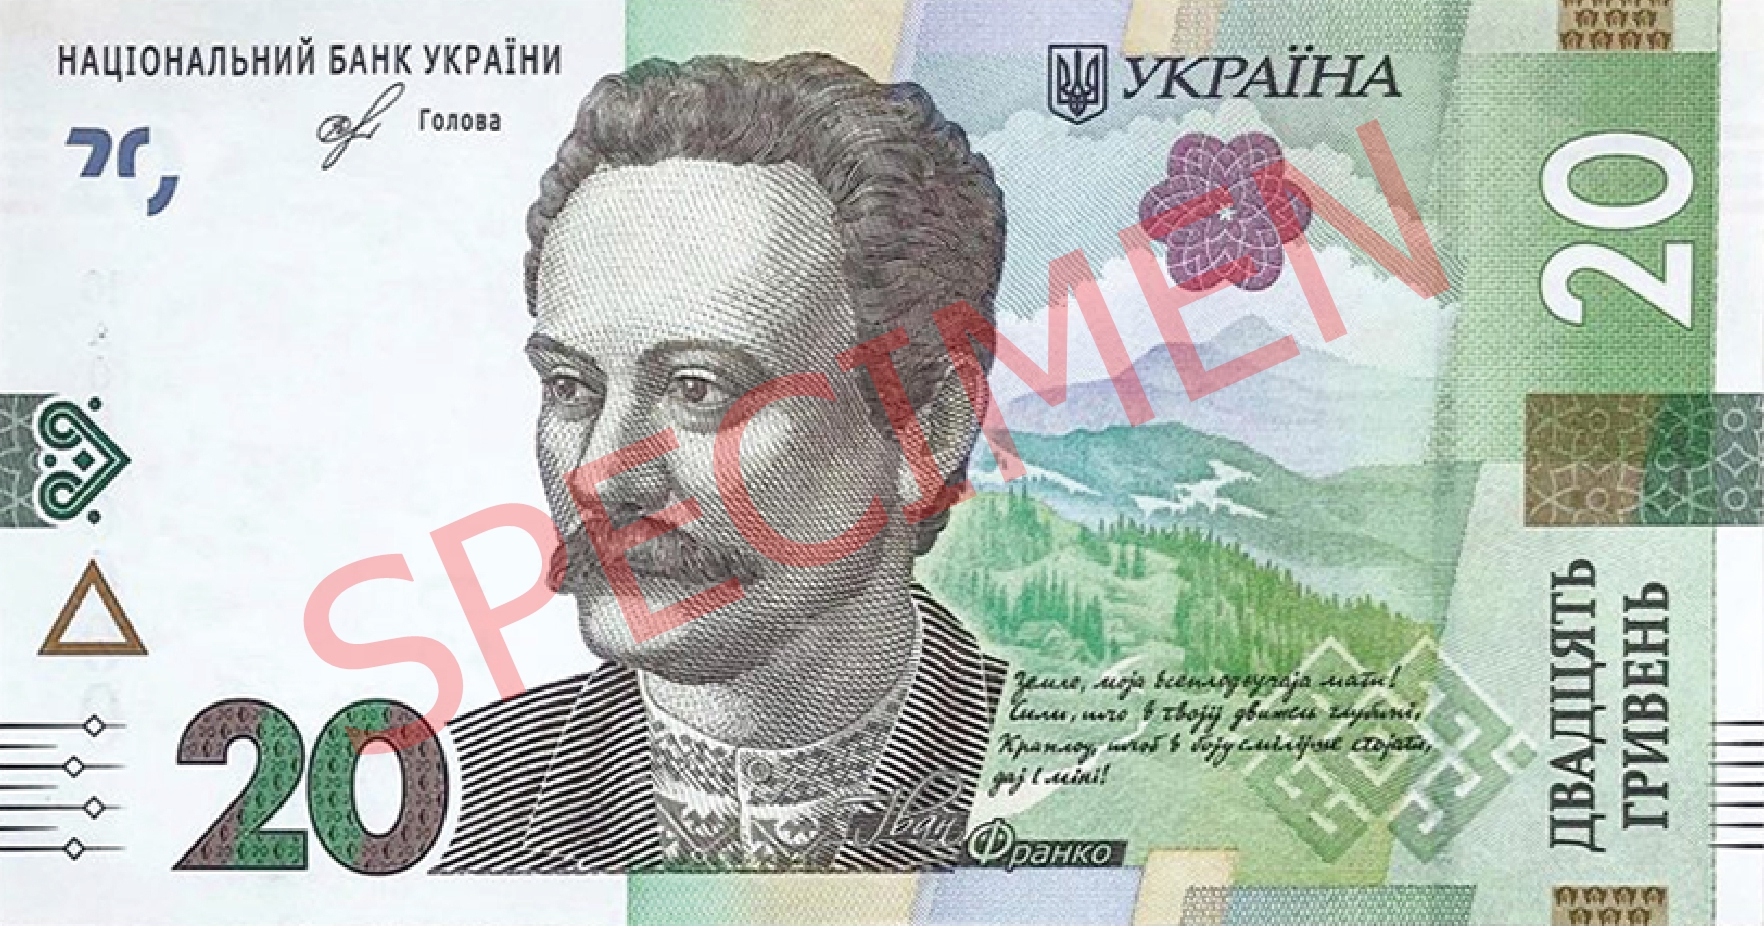 Ukraina ujawniła wizerunek nowego banknotu obiegowego o nominale 20 hrywien